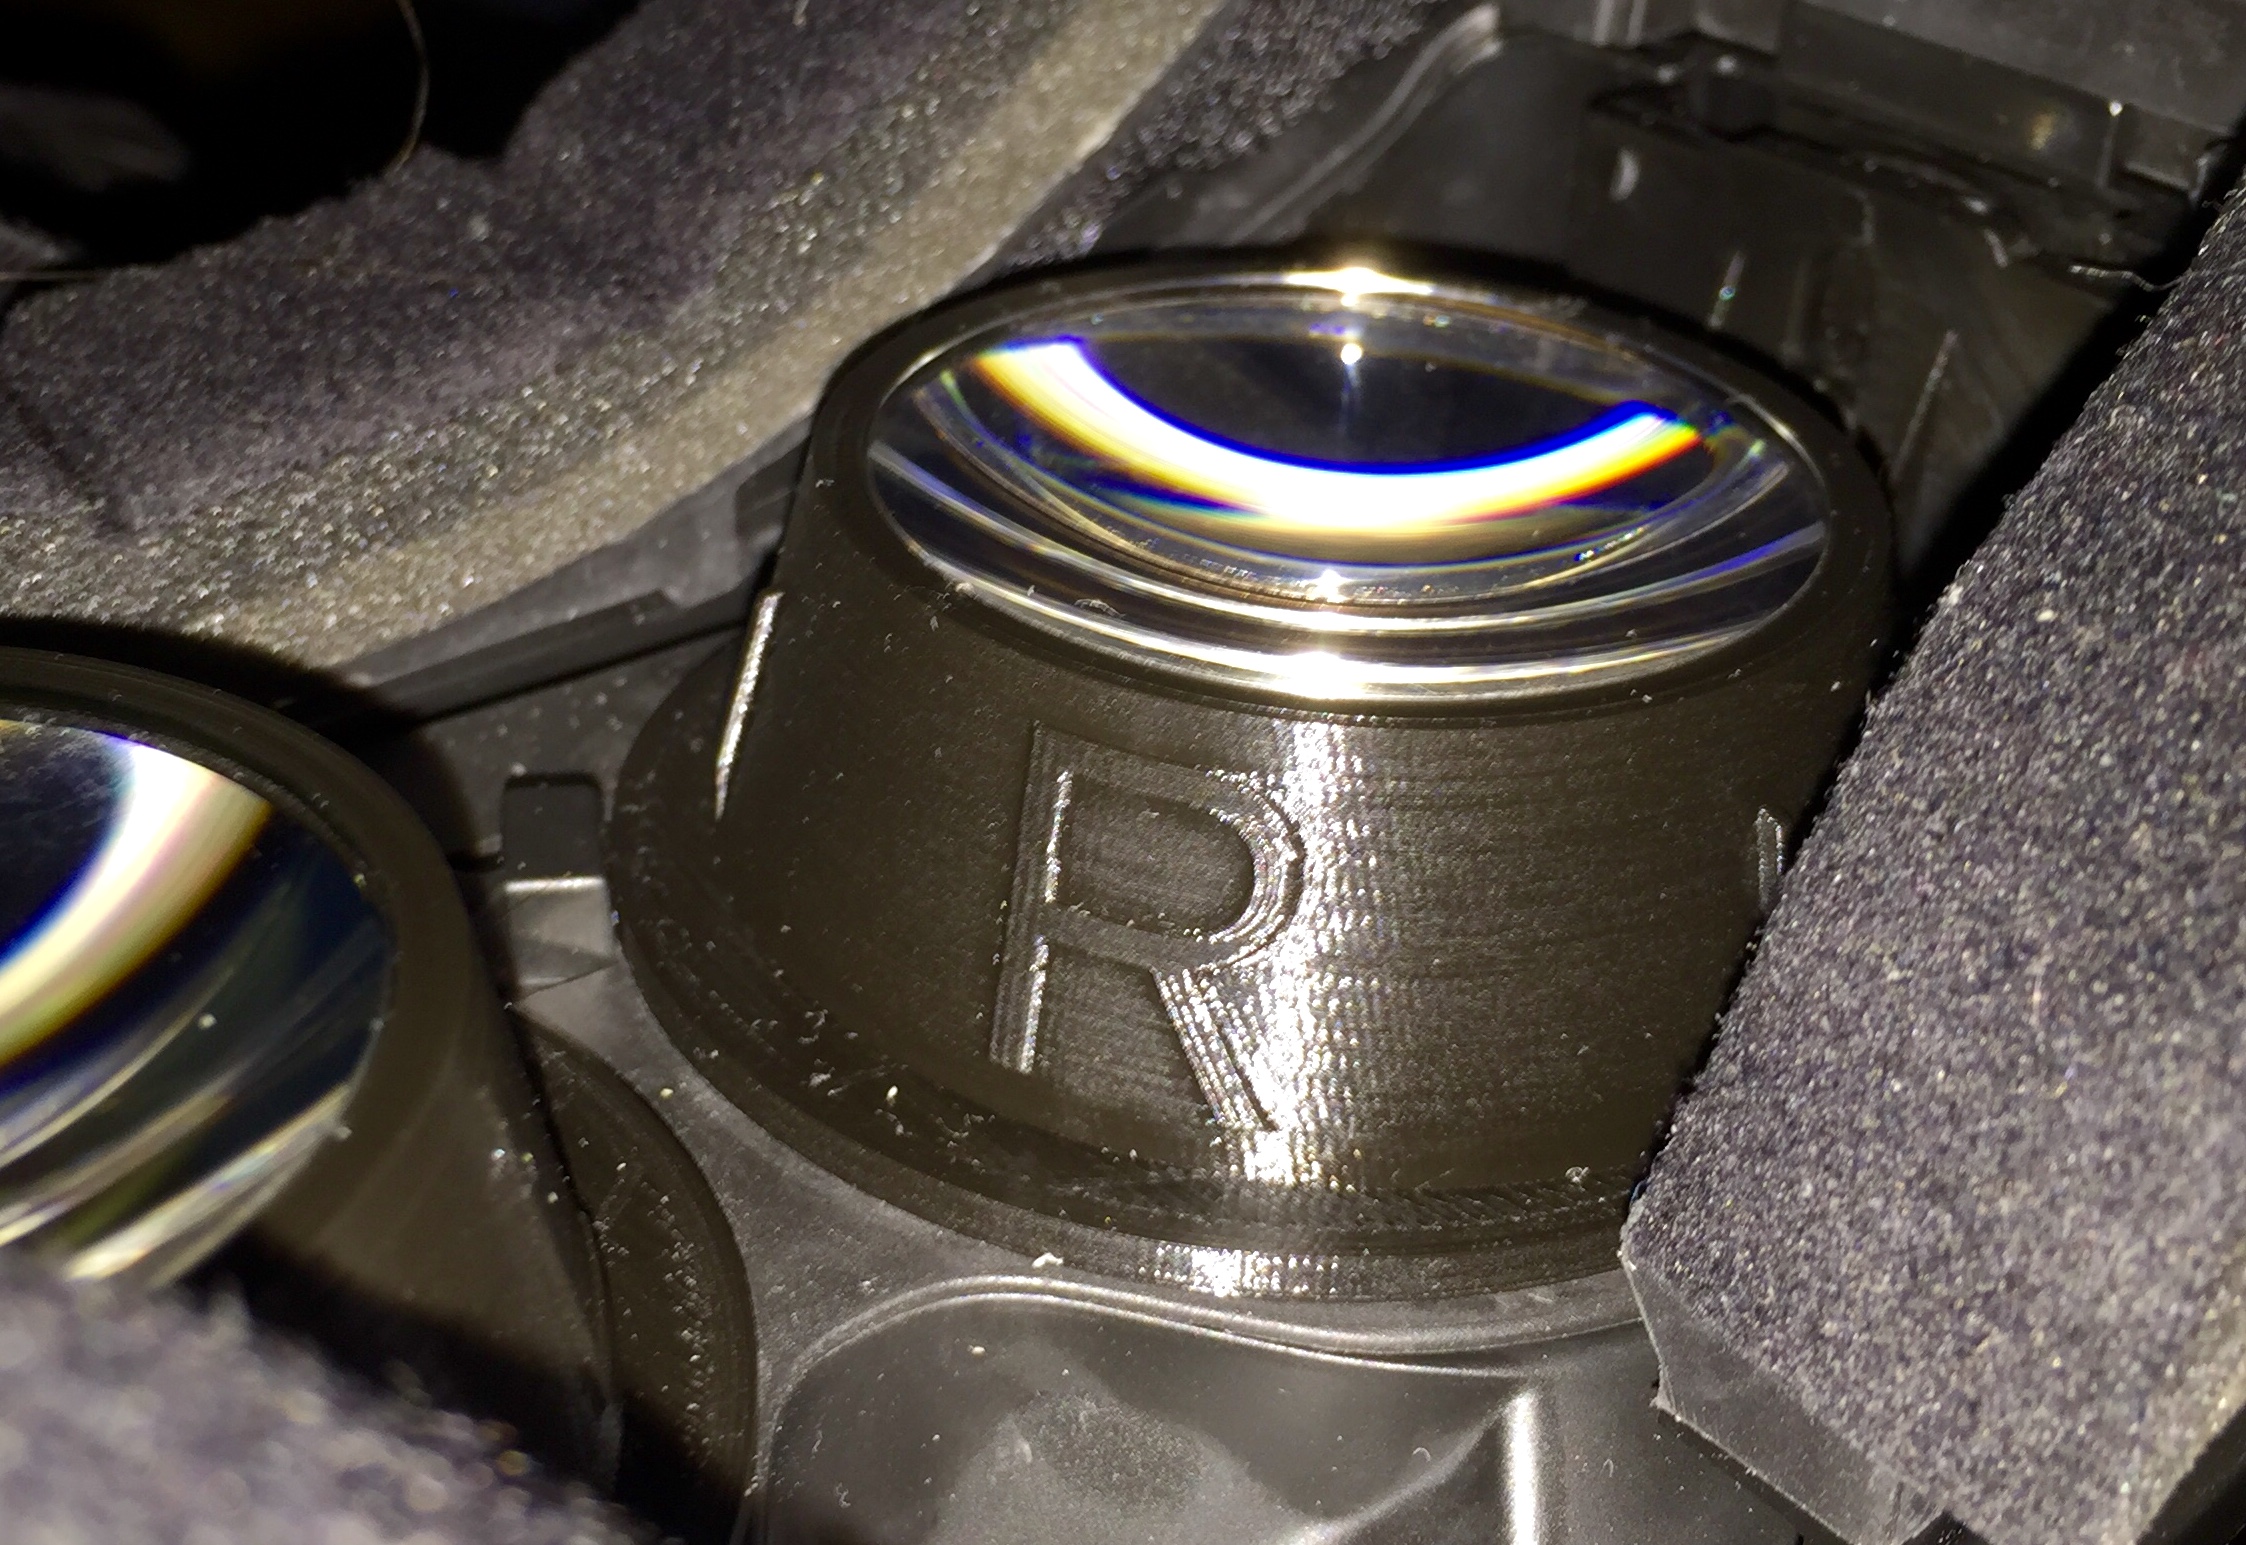 Parametric Rift DK2 Lens Cup